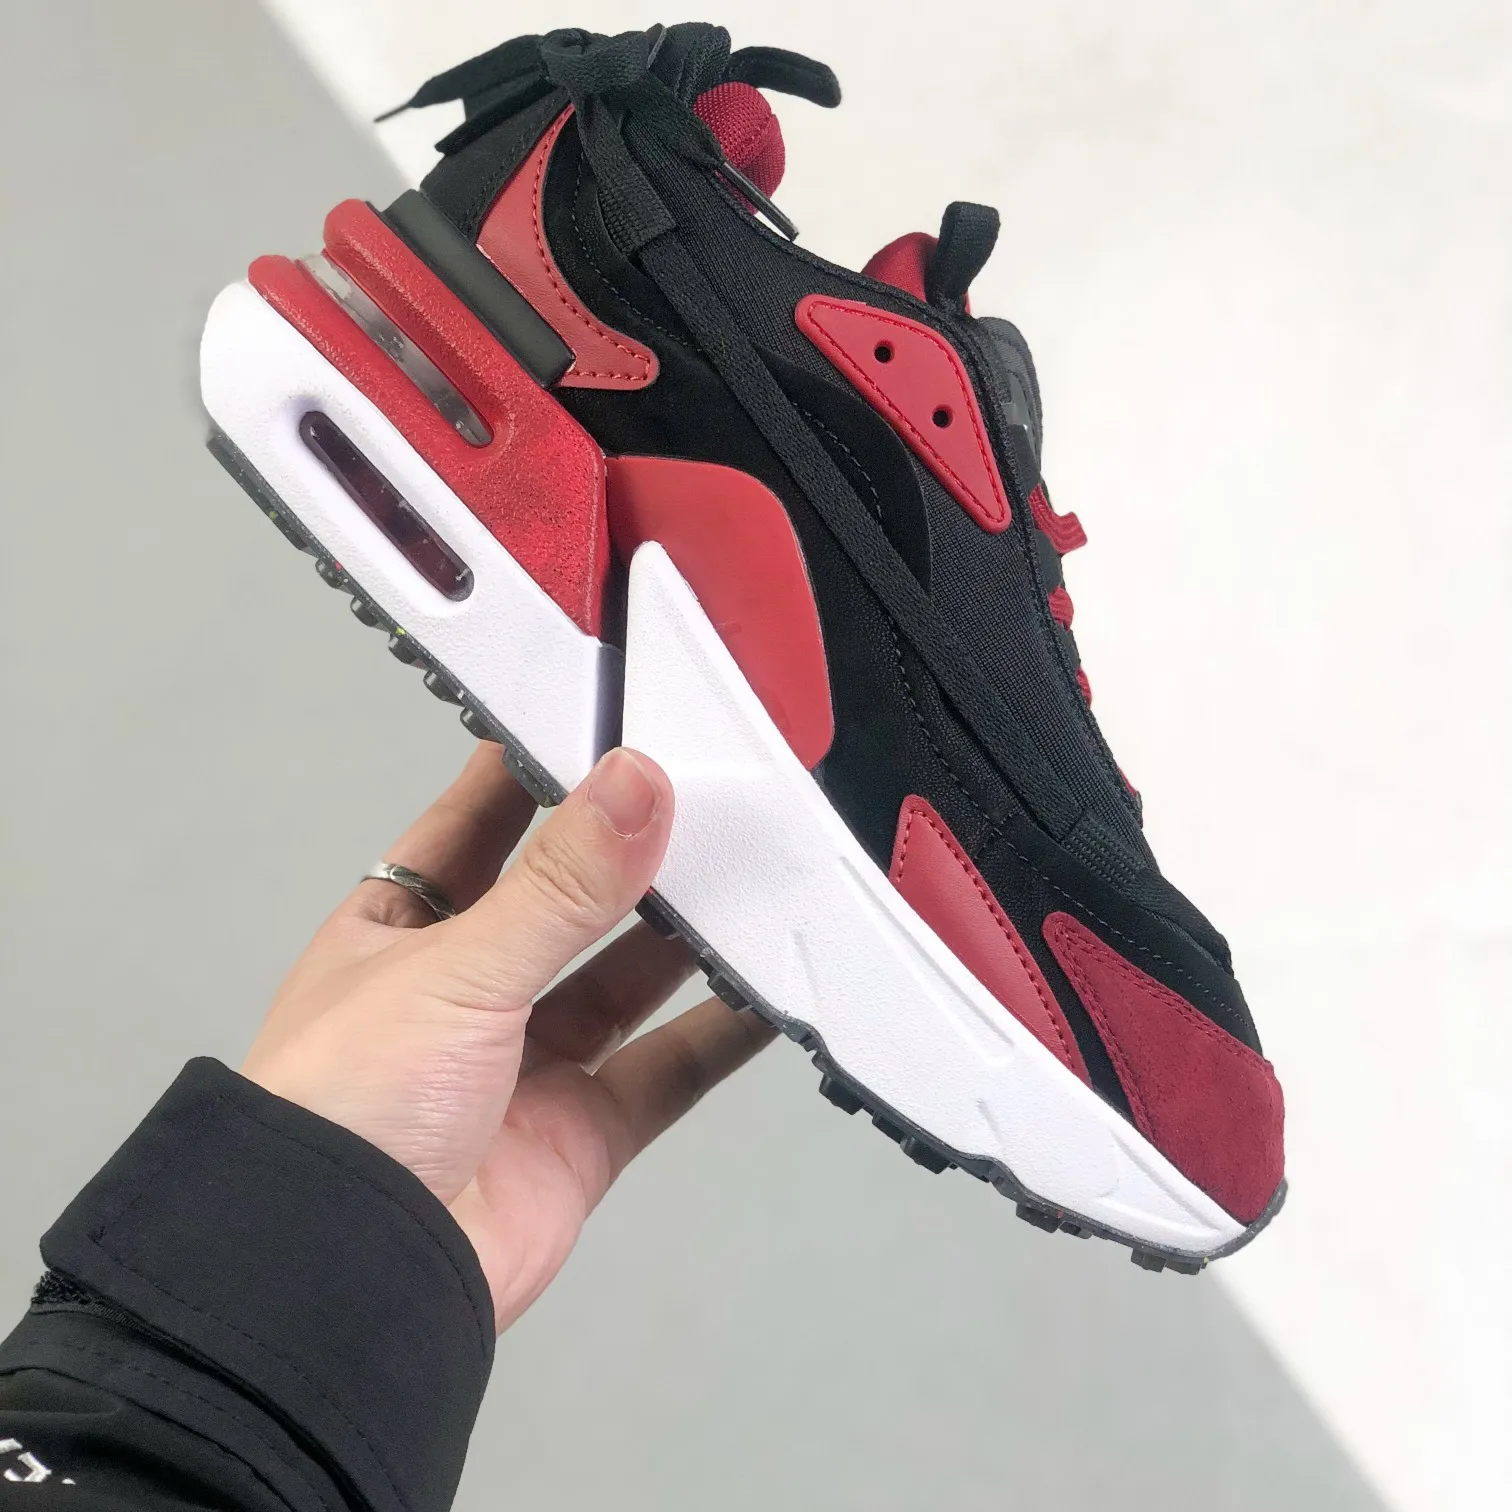 Retro Mens Air Zoom Max Furyosa Sneakers Shoes Rattan Black Red